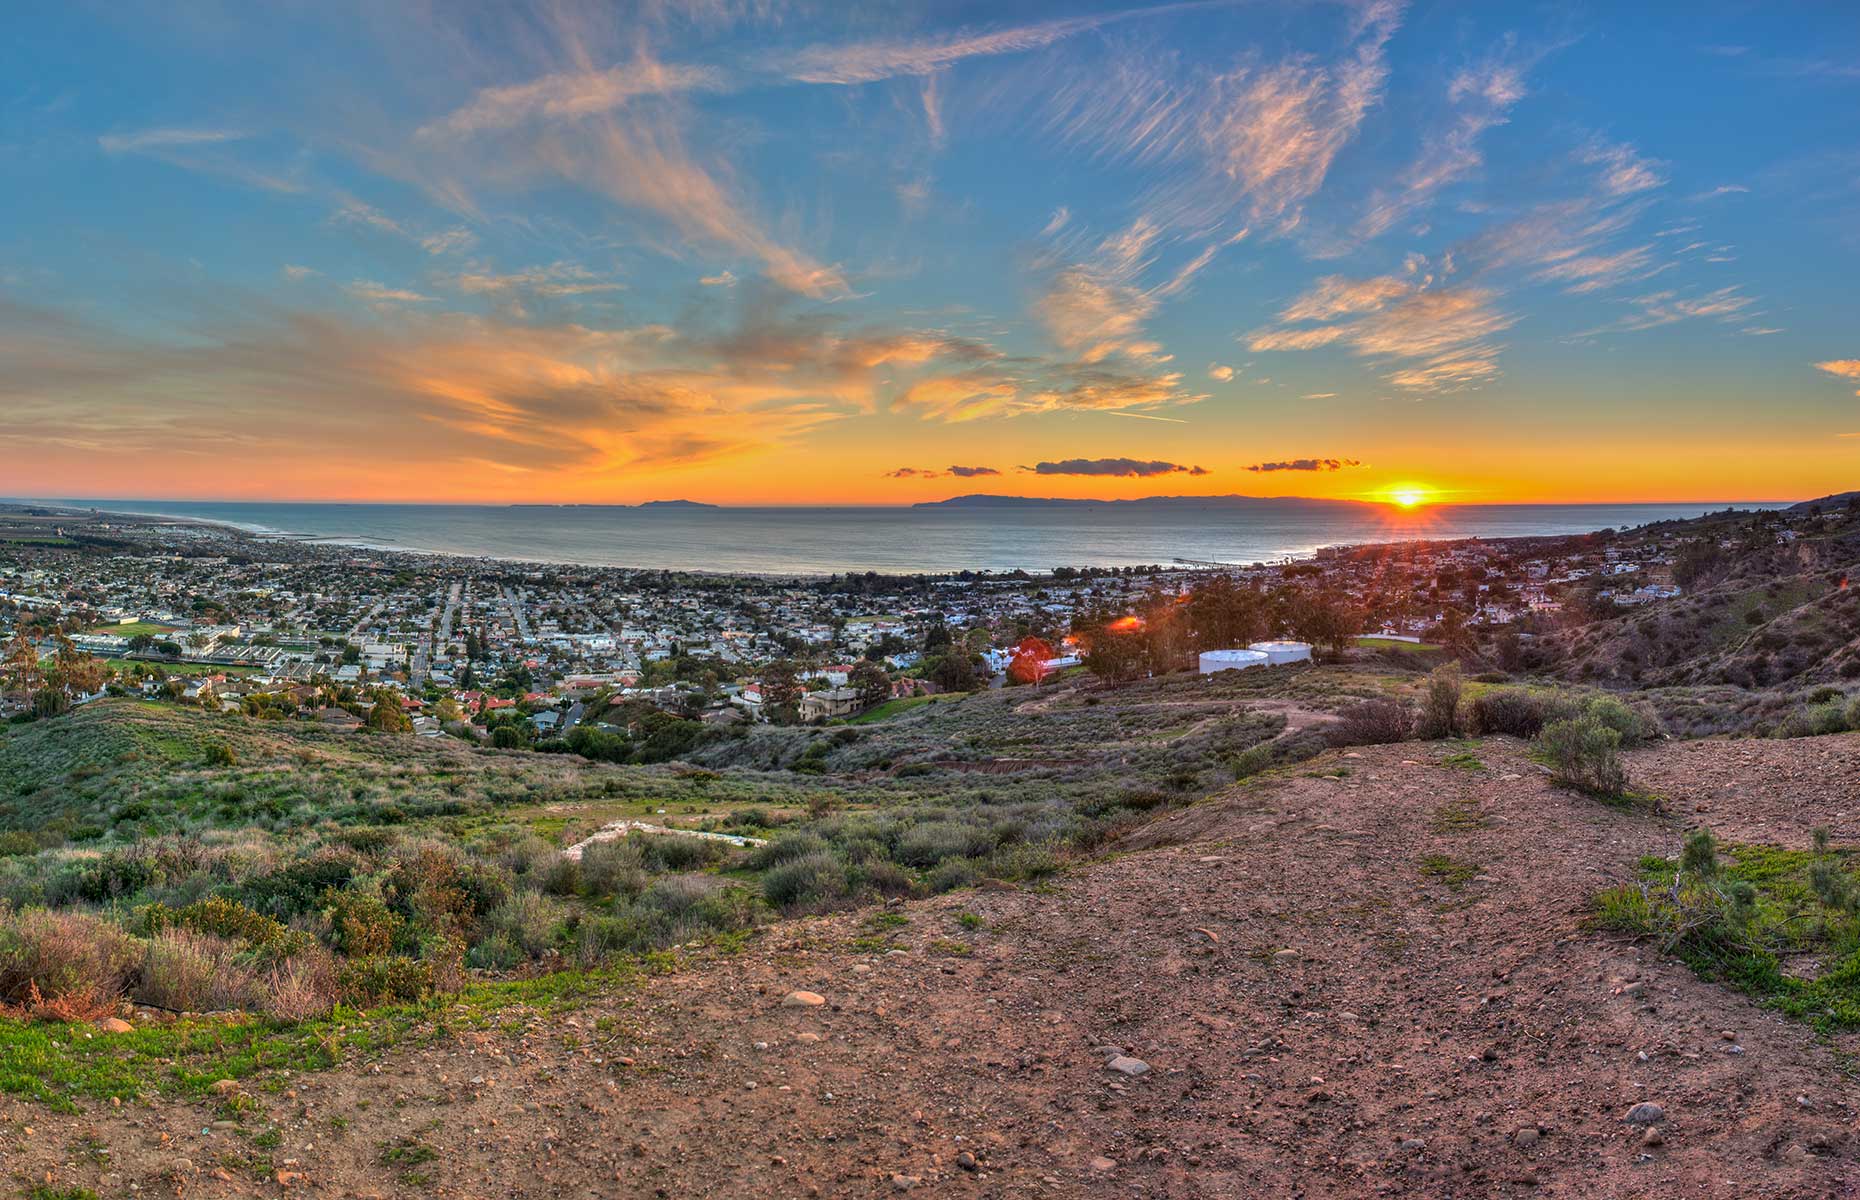 Ventura (Image: Jon Osumi/Shutterstock)